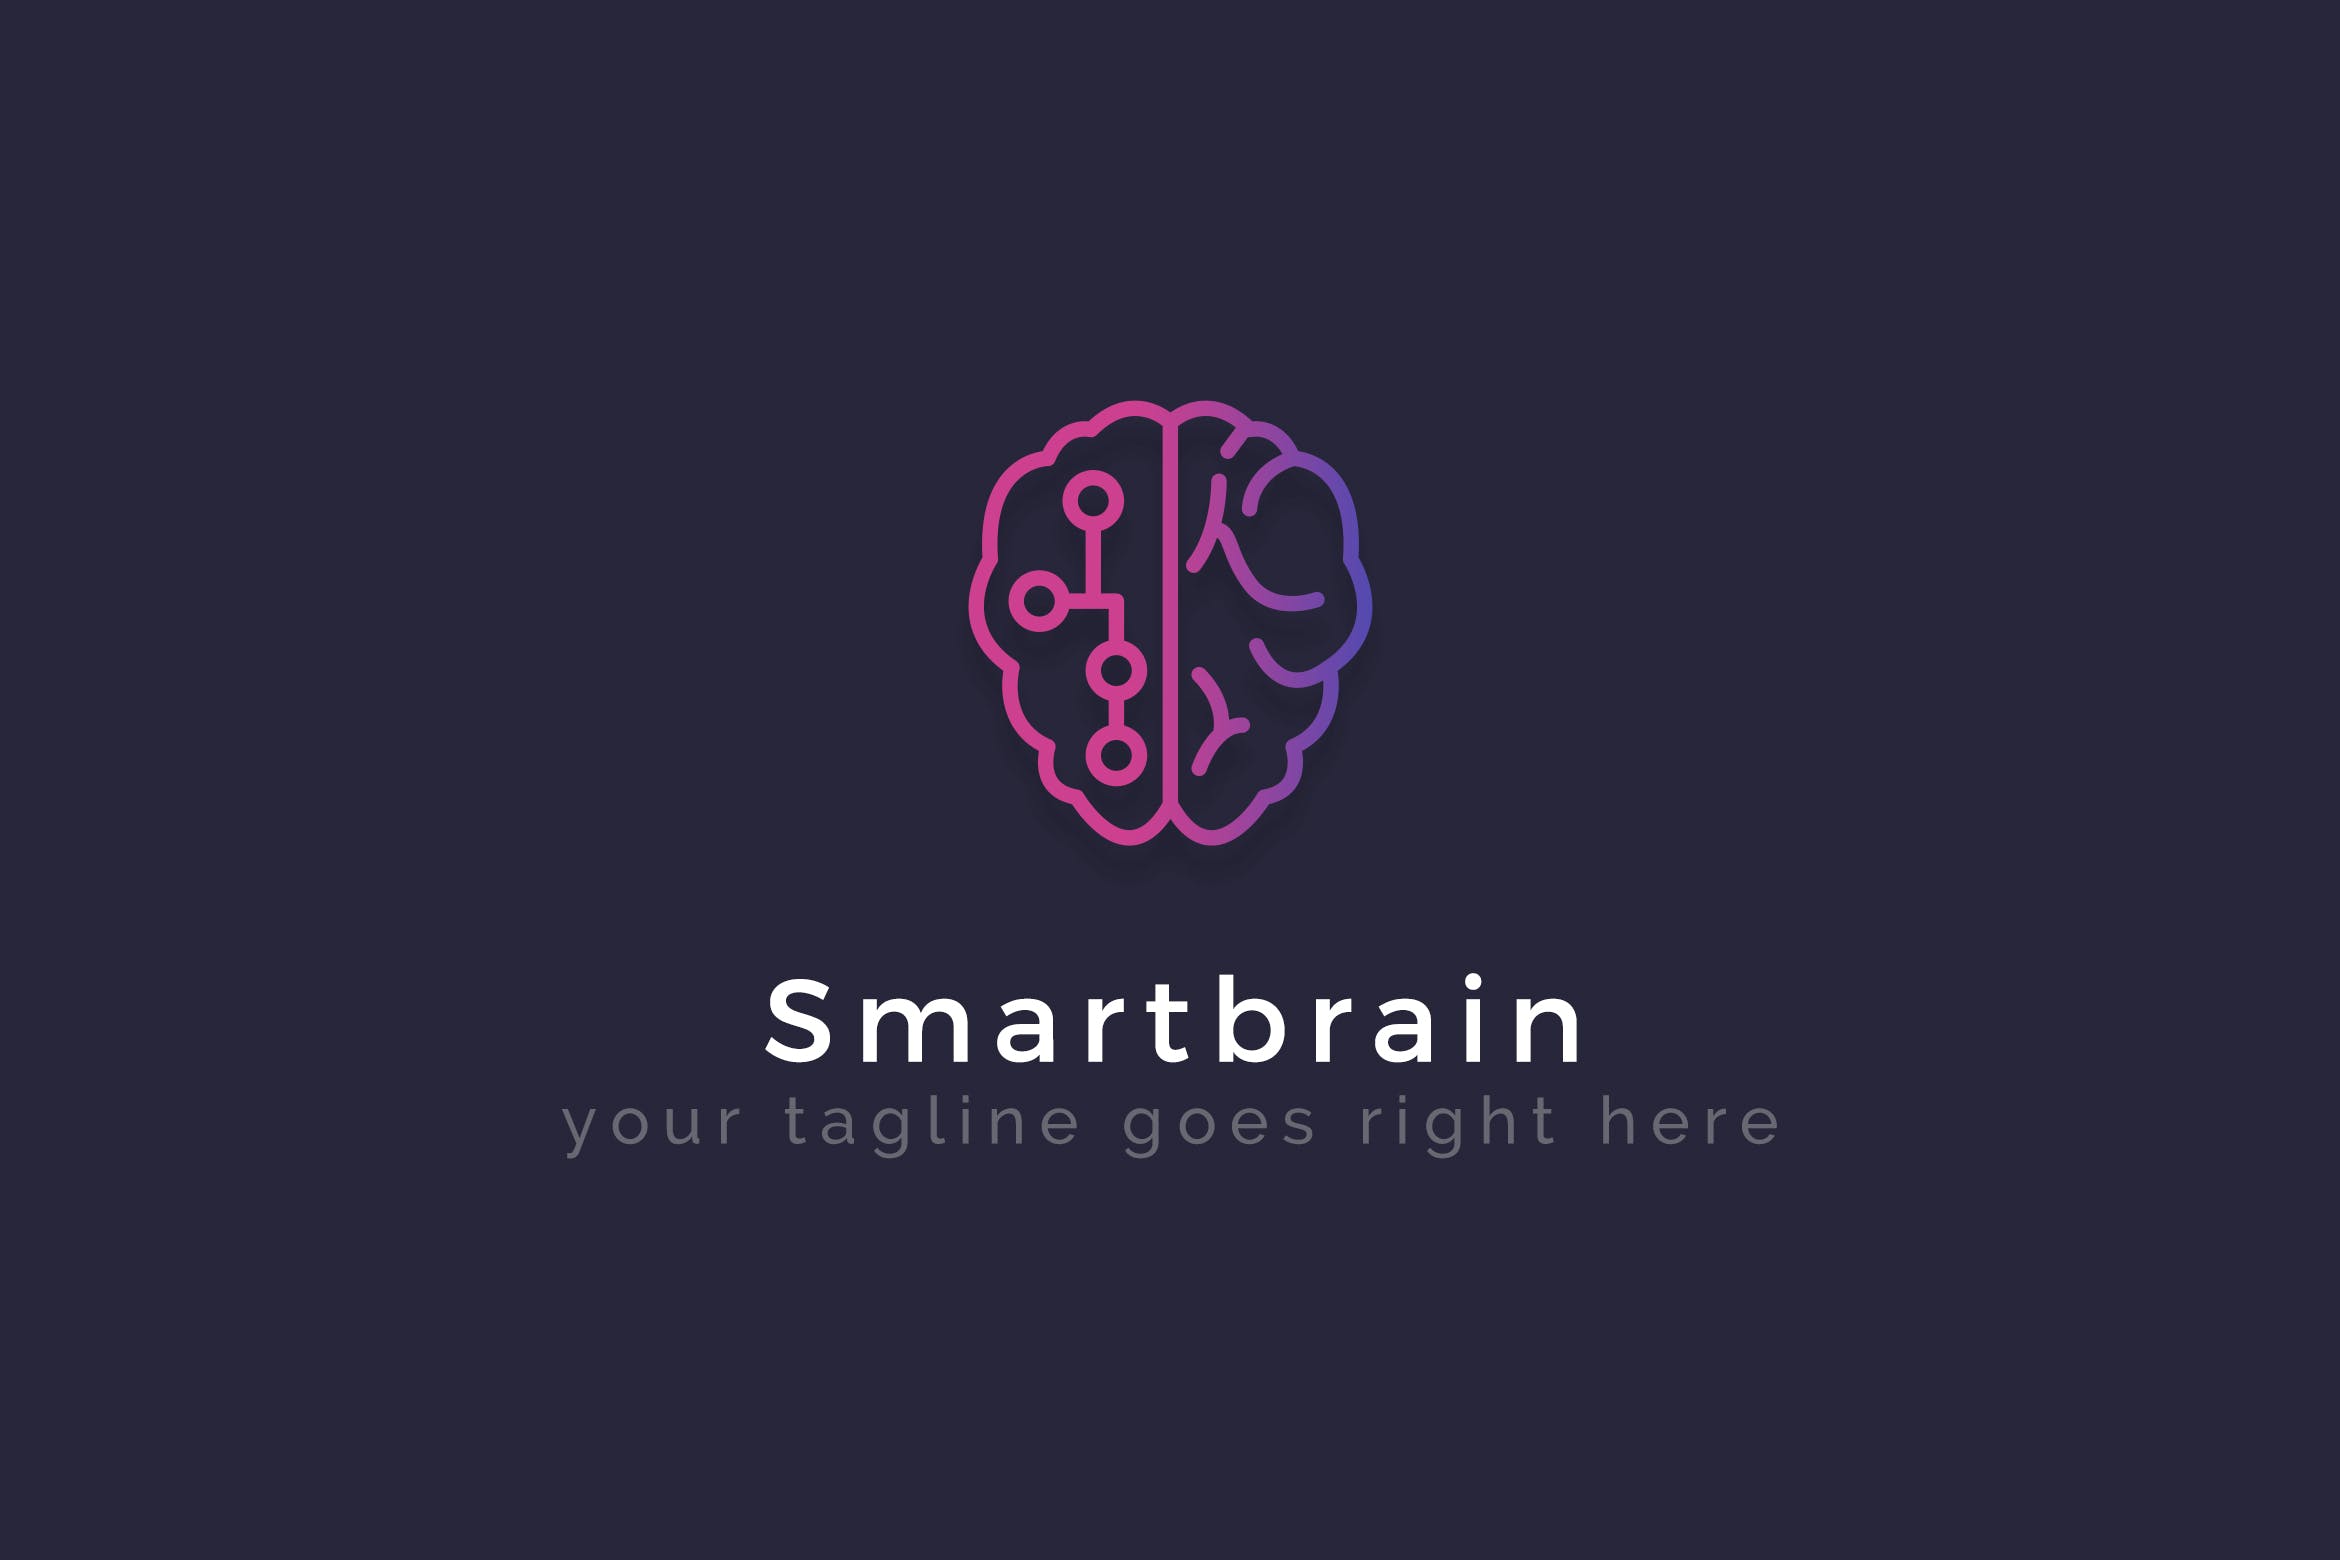 智能大脑AI品牌Logo设计素材库精选模板 Smartbrain – Creative Logo Template插图